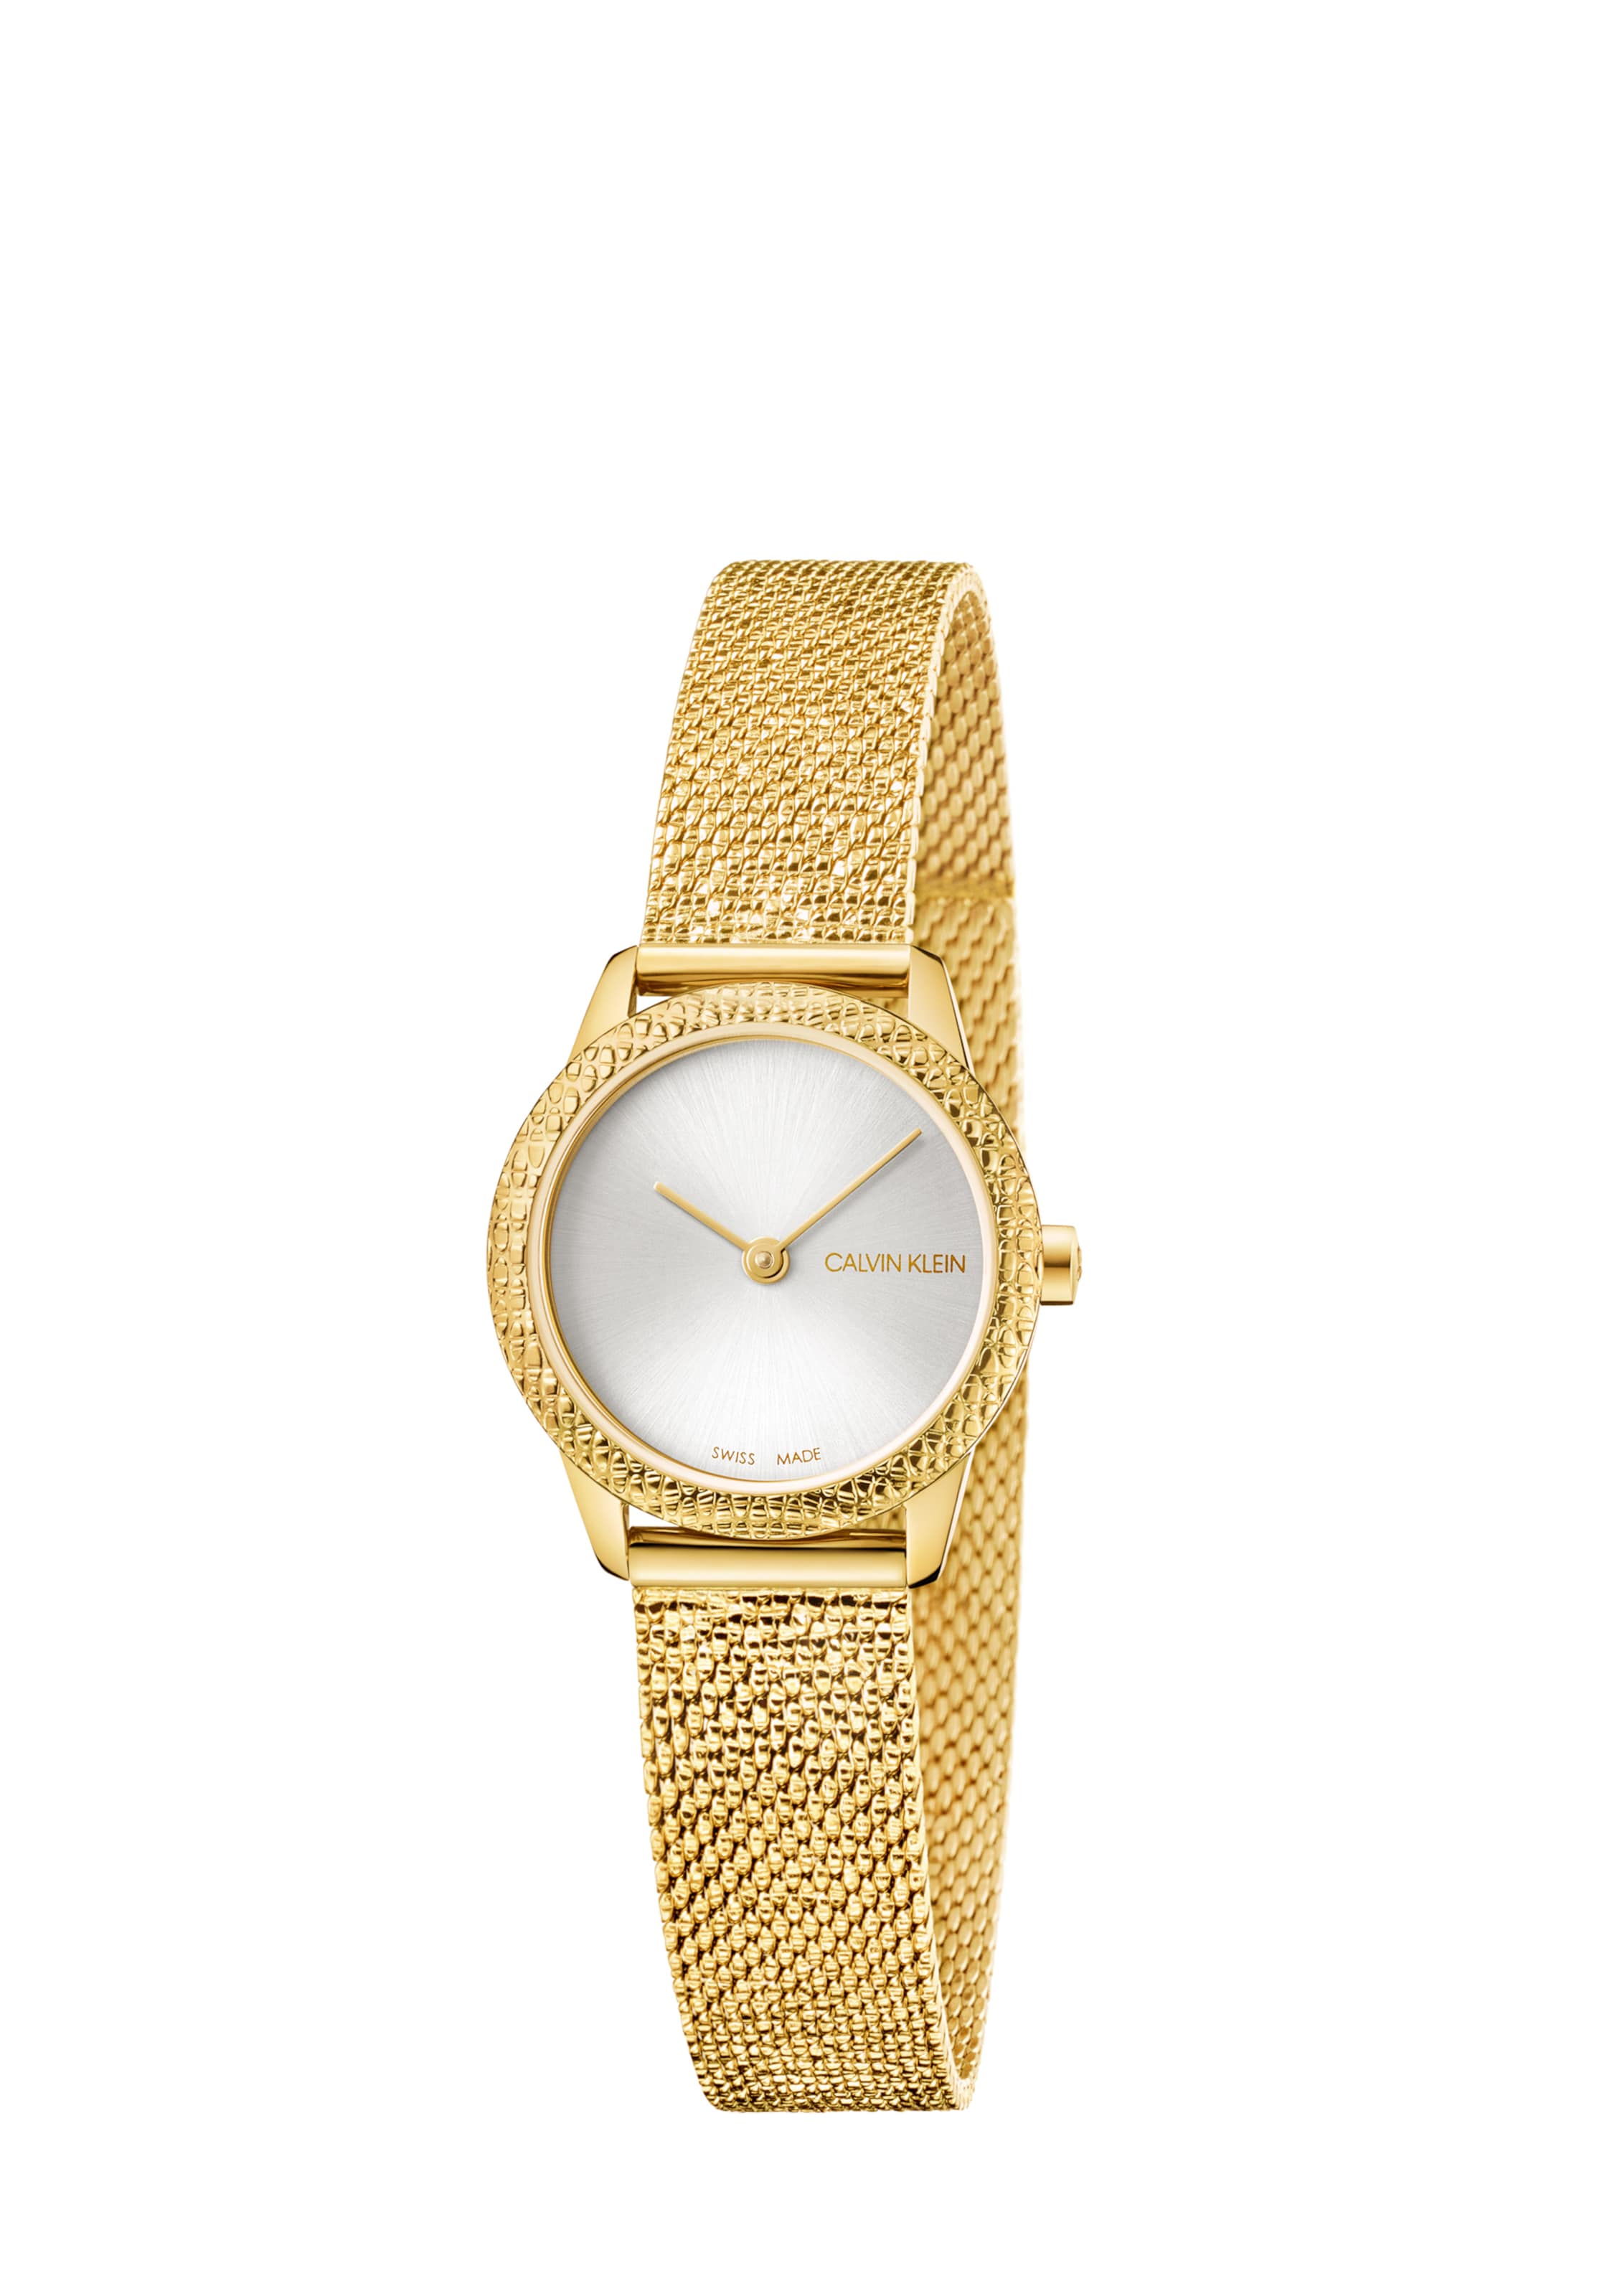 Frauen Uhren Calvin Klein Uhr in Gold - VI20408